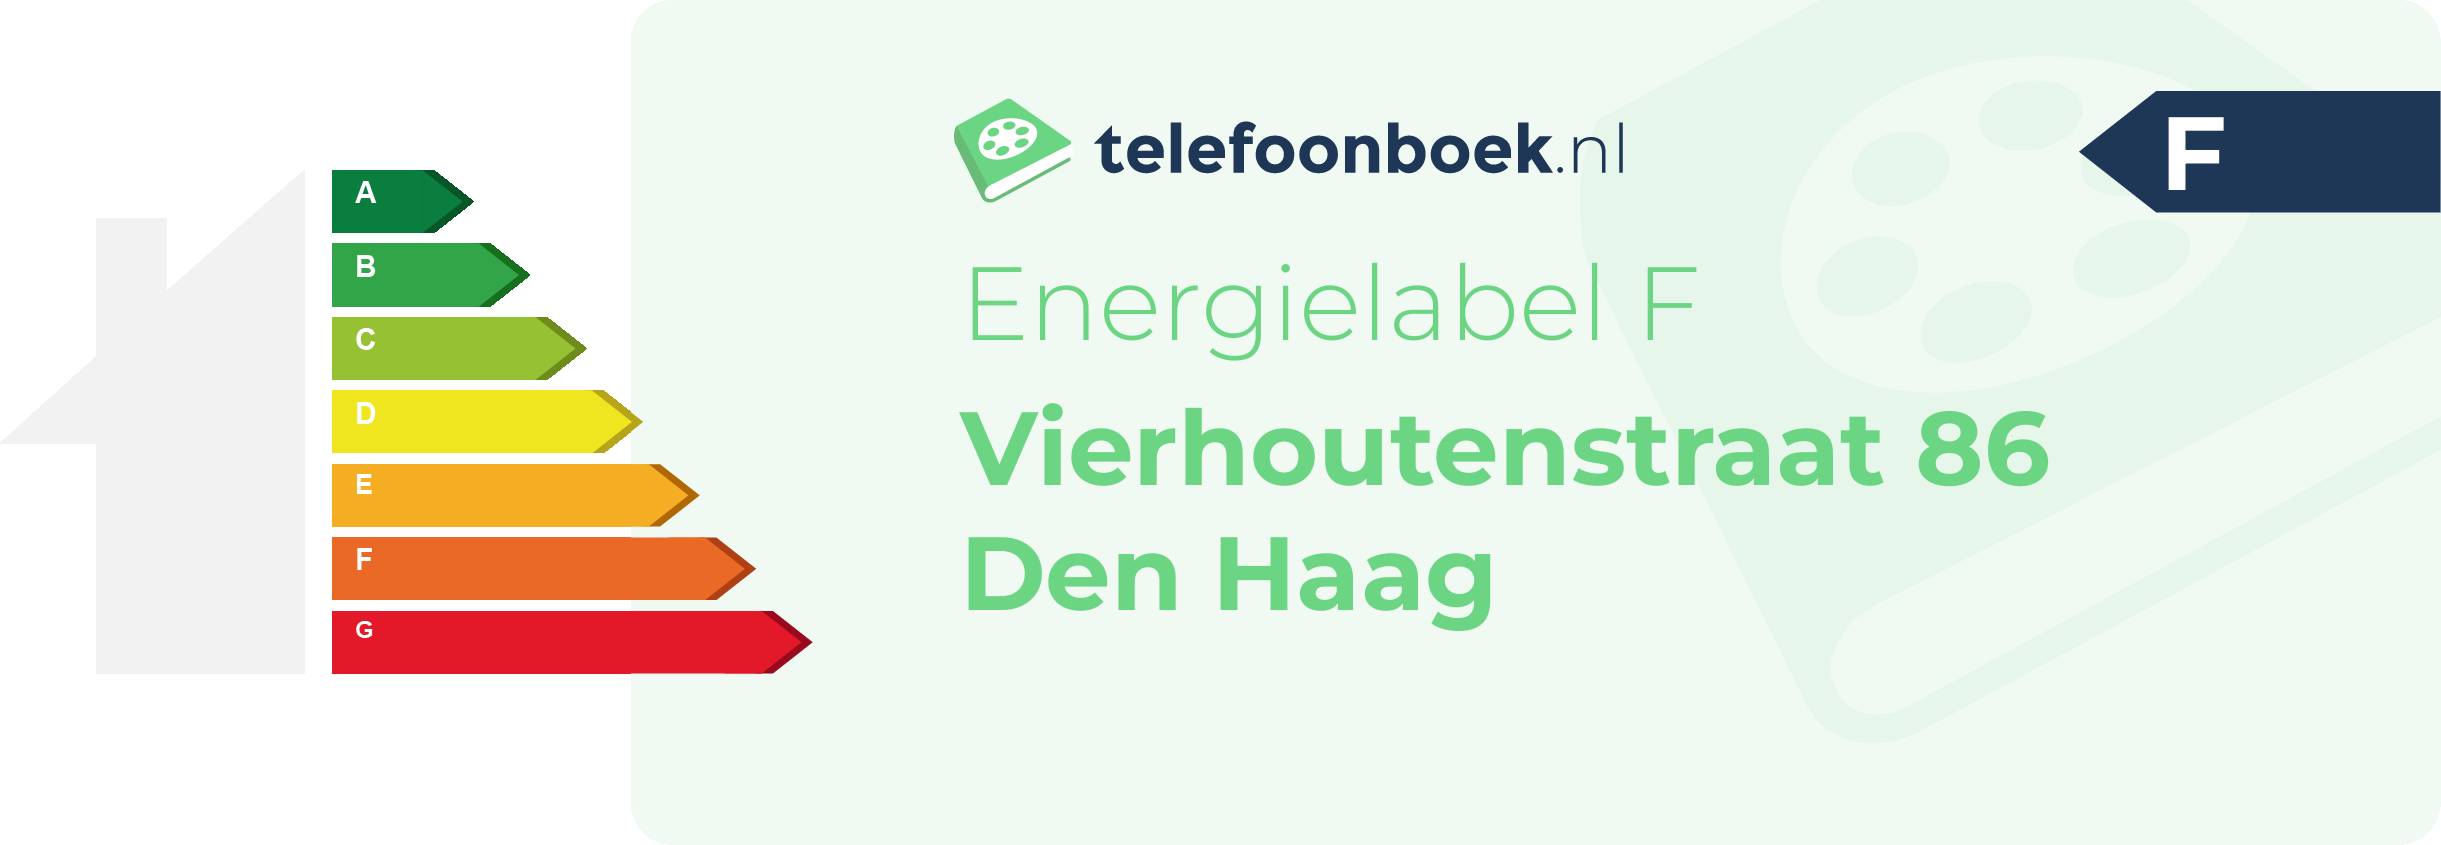 Energielabel Vierhoutenstraat 86 Den Haag